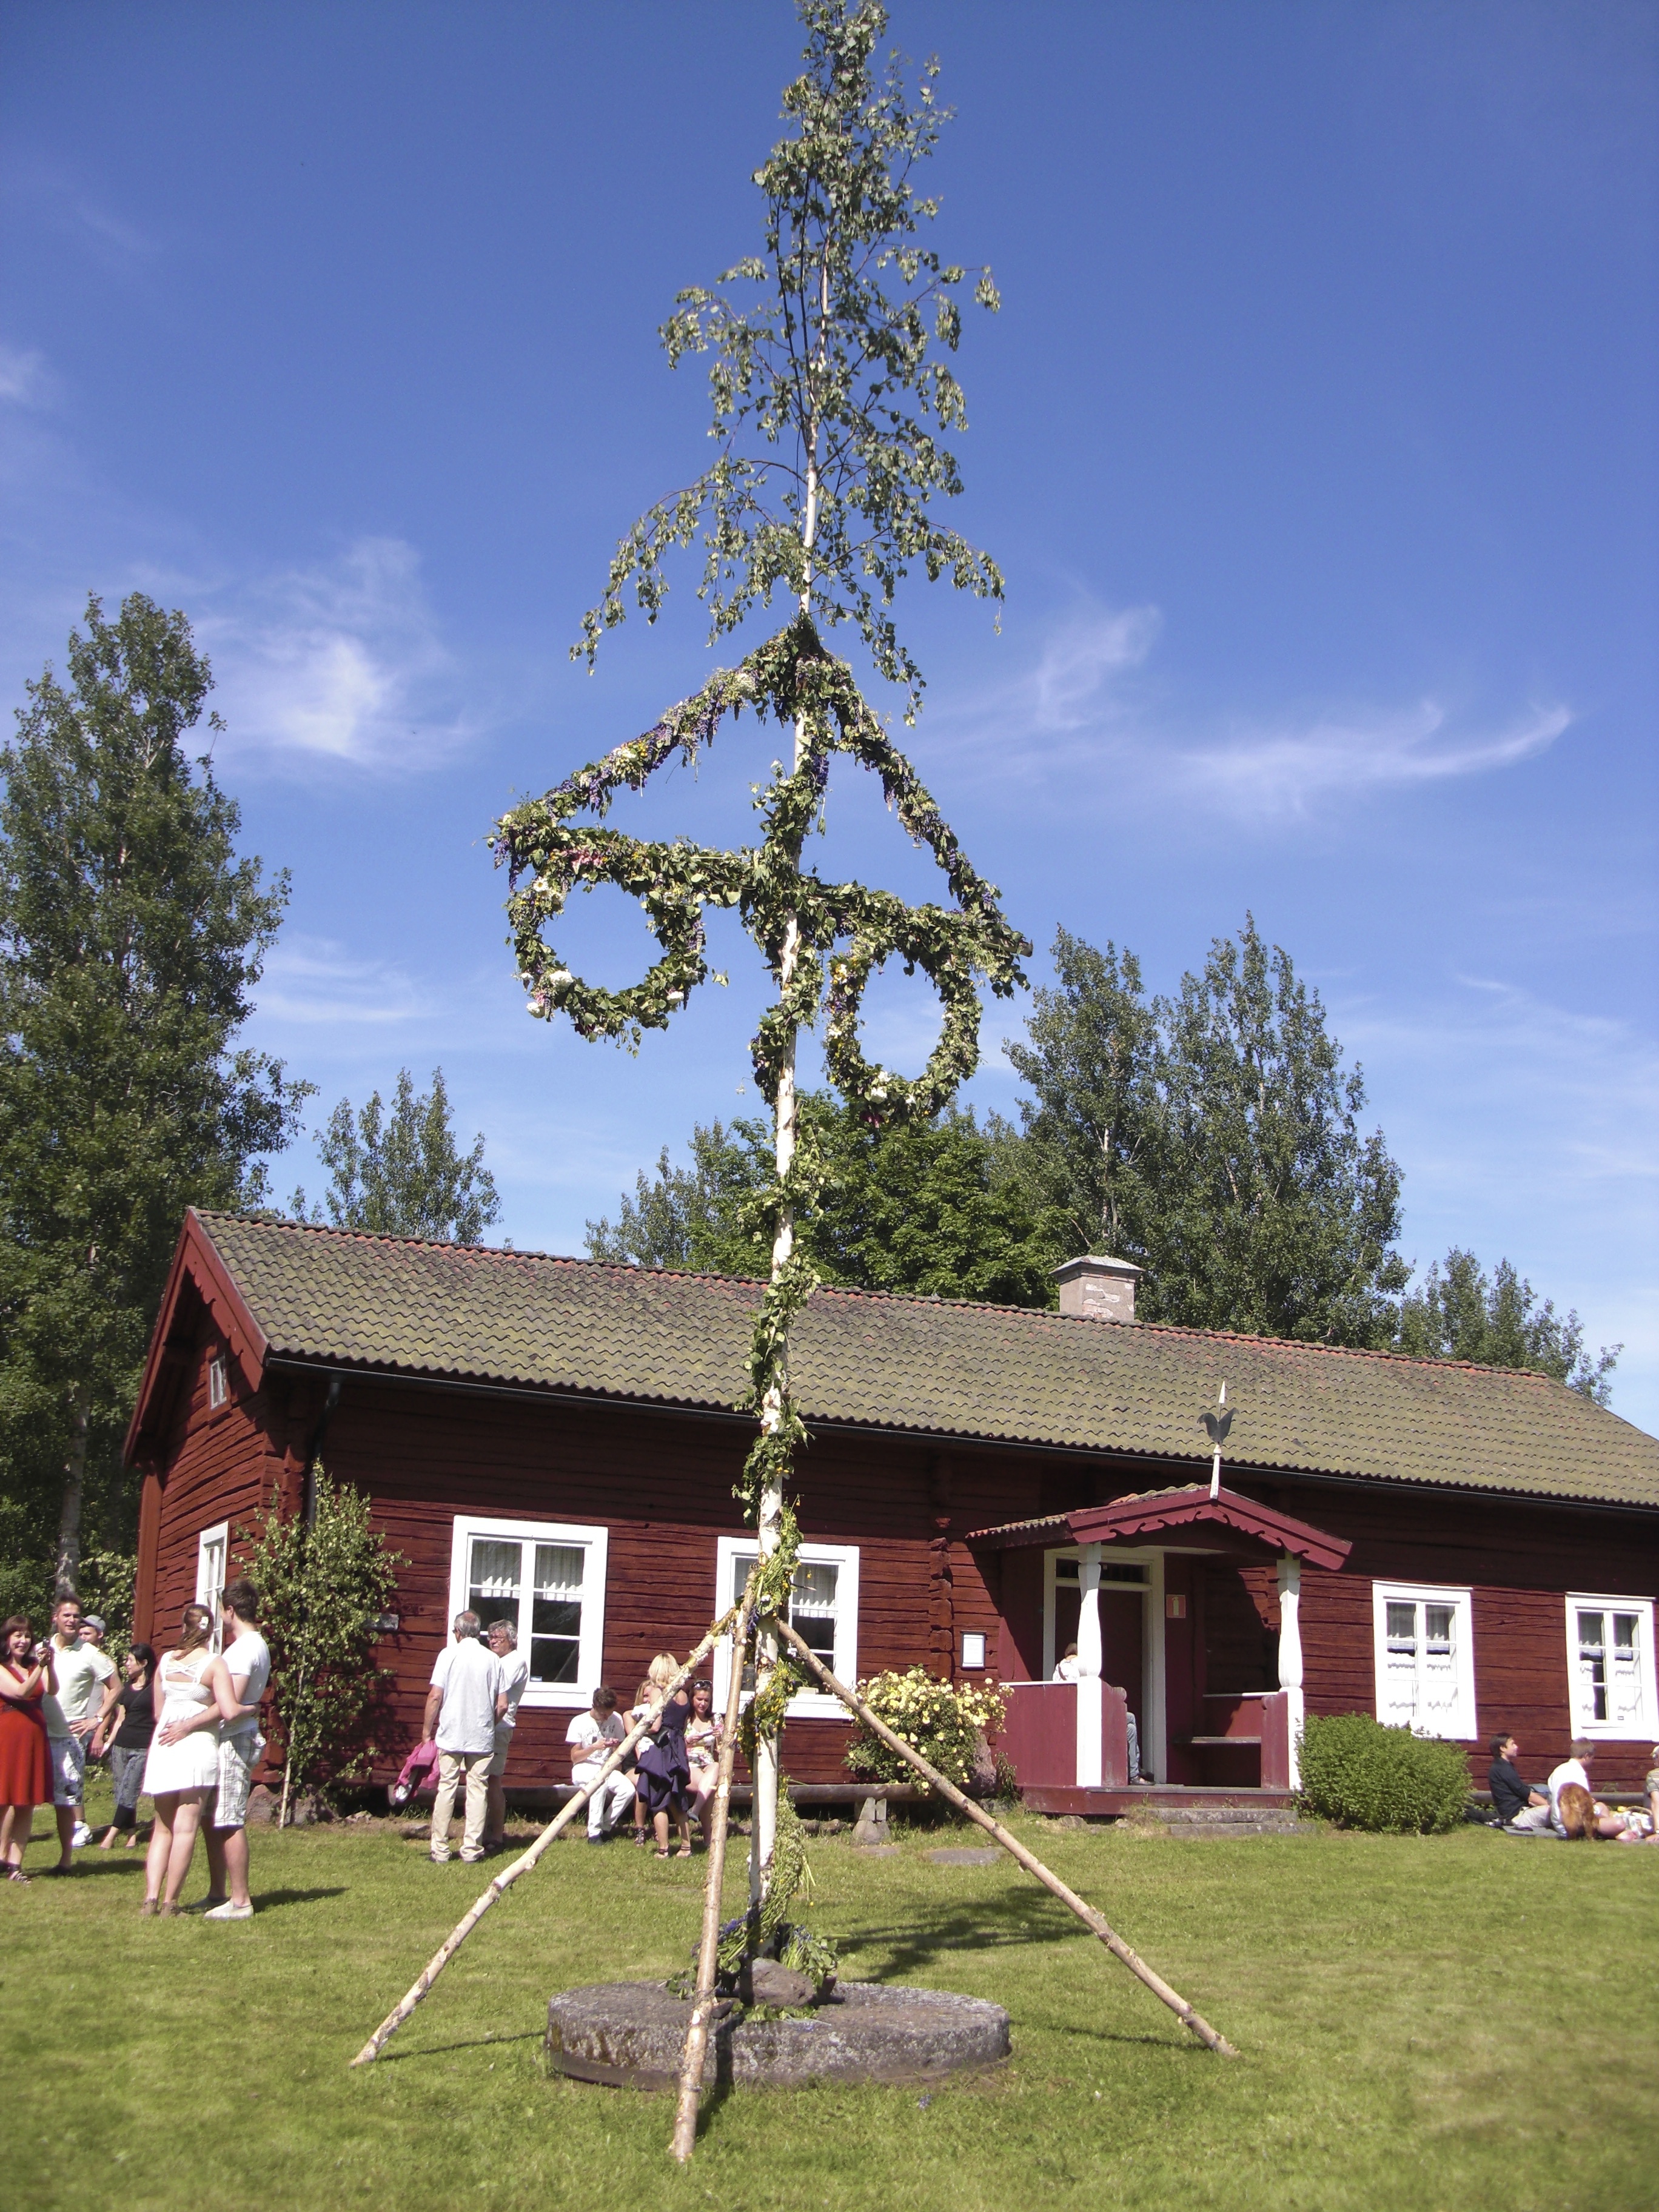 第2回：夏の到来を祝い、自然に感謝する〜北欧スウェーデンの夏〜｜ 北欧スウェーデン、夫の祖国の素敵な暮らし